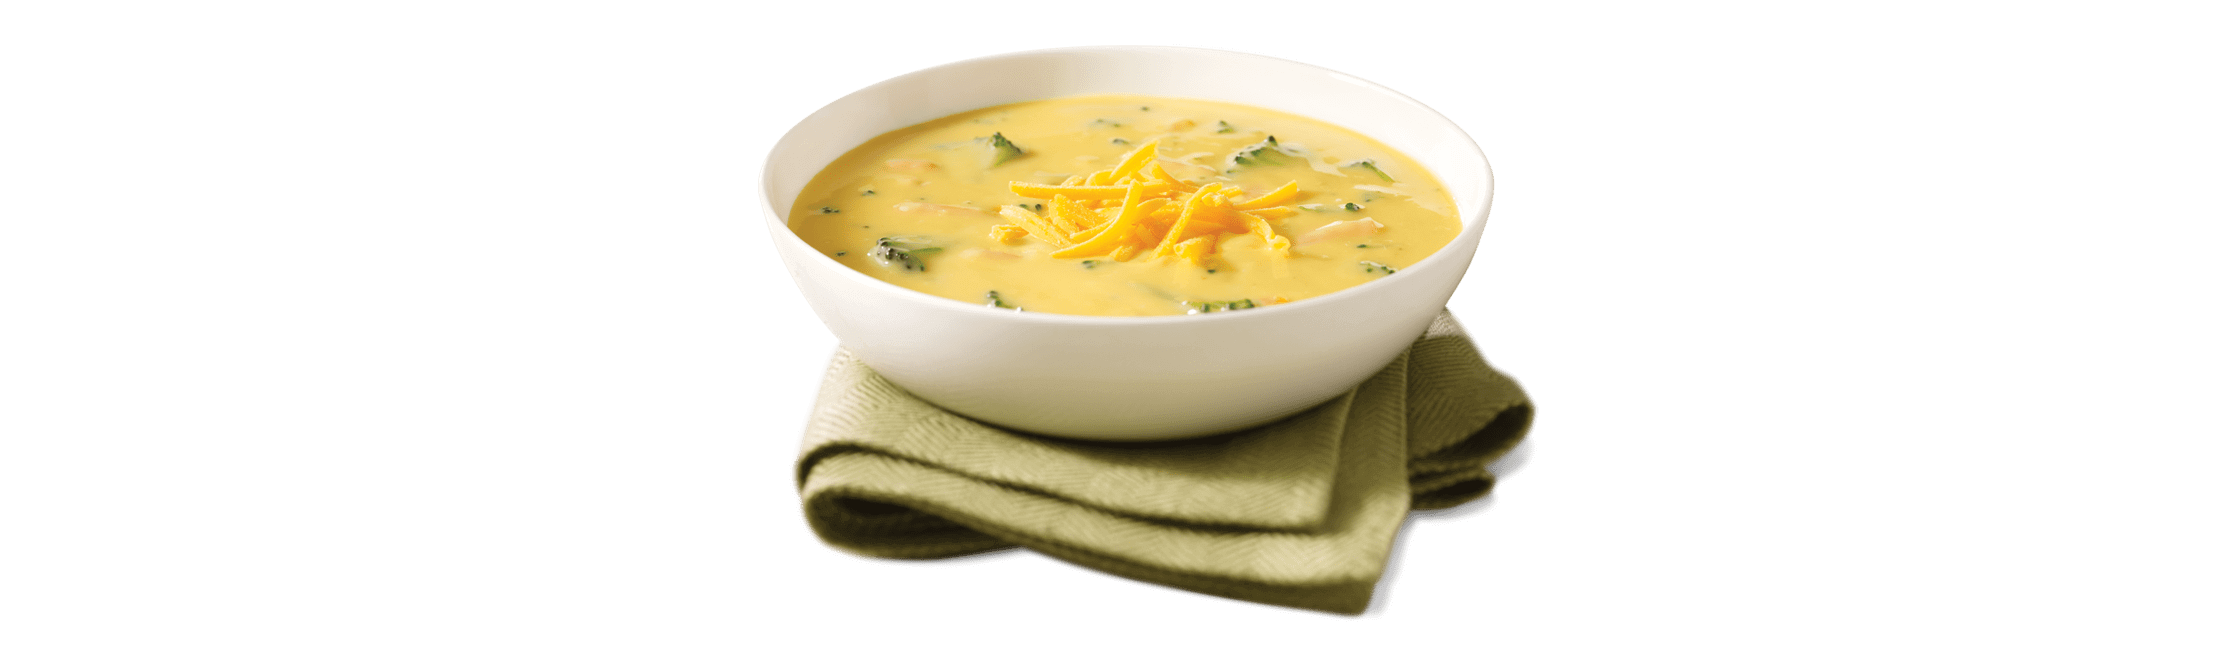 soups